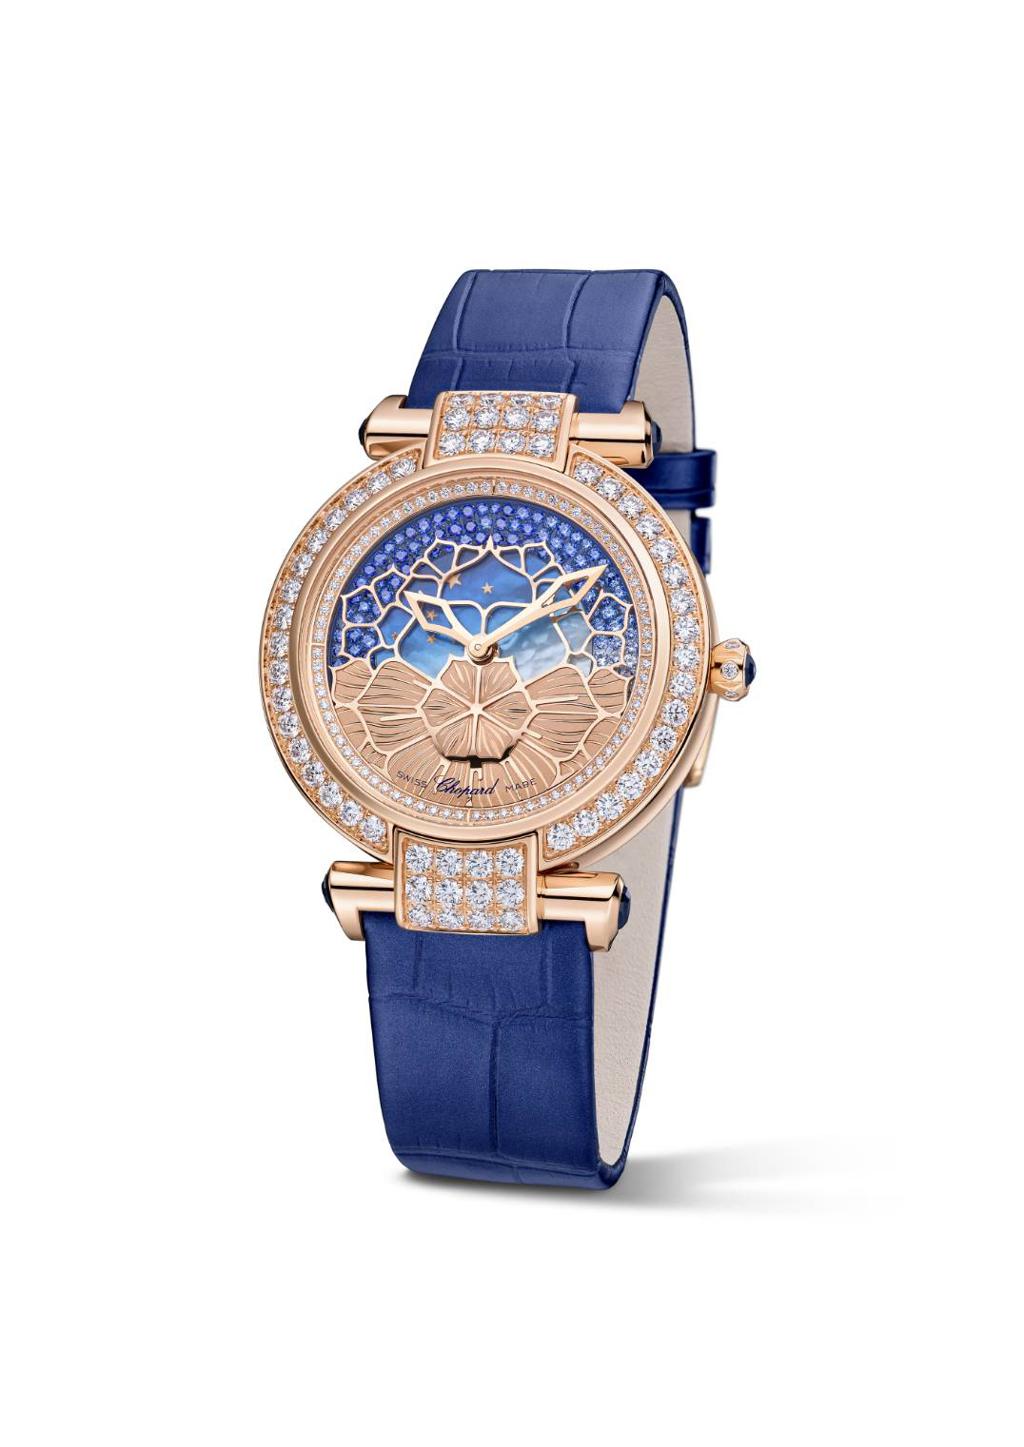 蕭邦在表展推出IMPERIALE系列珠寶表，以珠寶工藝勾勒腕表之美。(Chopard)